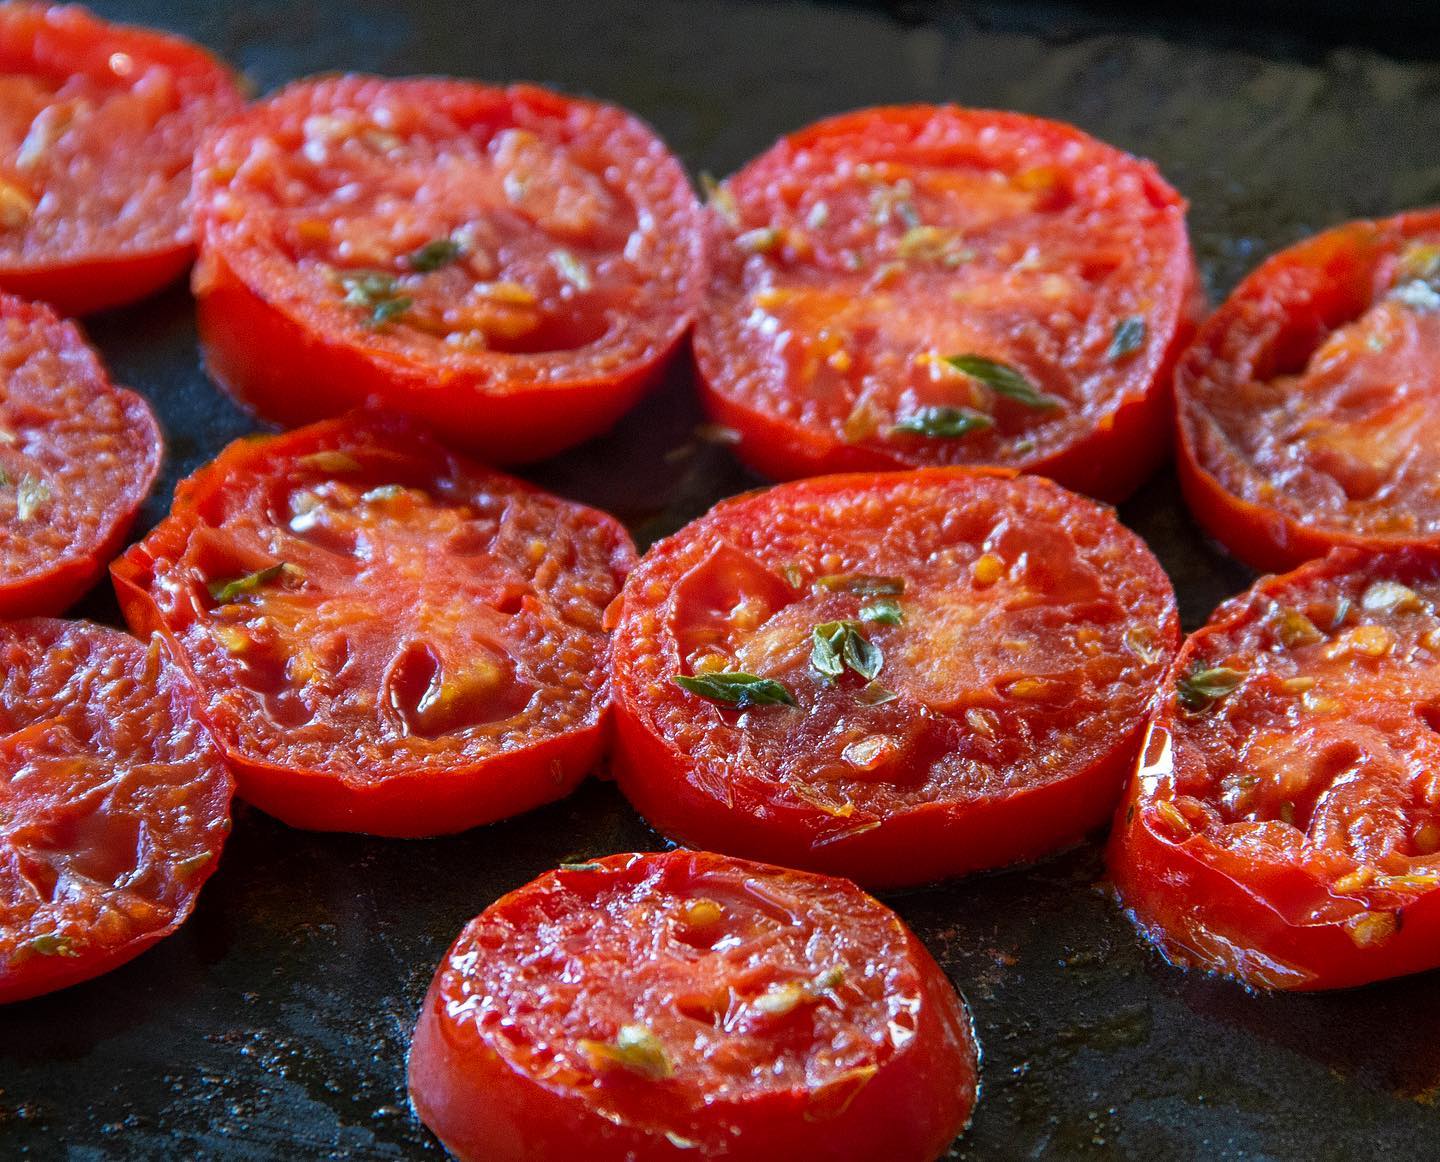 Tomates 🍅 🍅 dorées à la plancha #tomatesalaplancha #tomatesalaplancha🍅🍅🍅 #pomodorigrigliati #grilledtomatoes